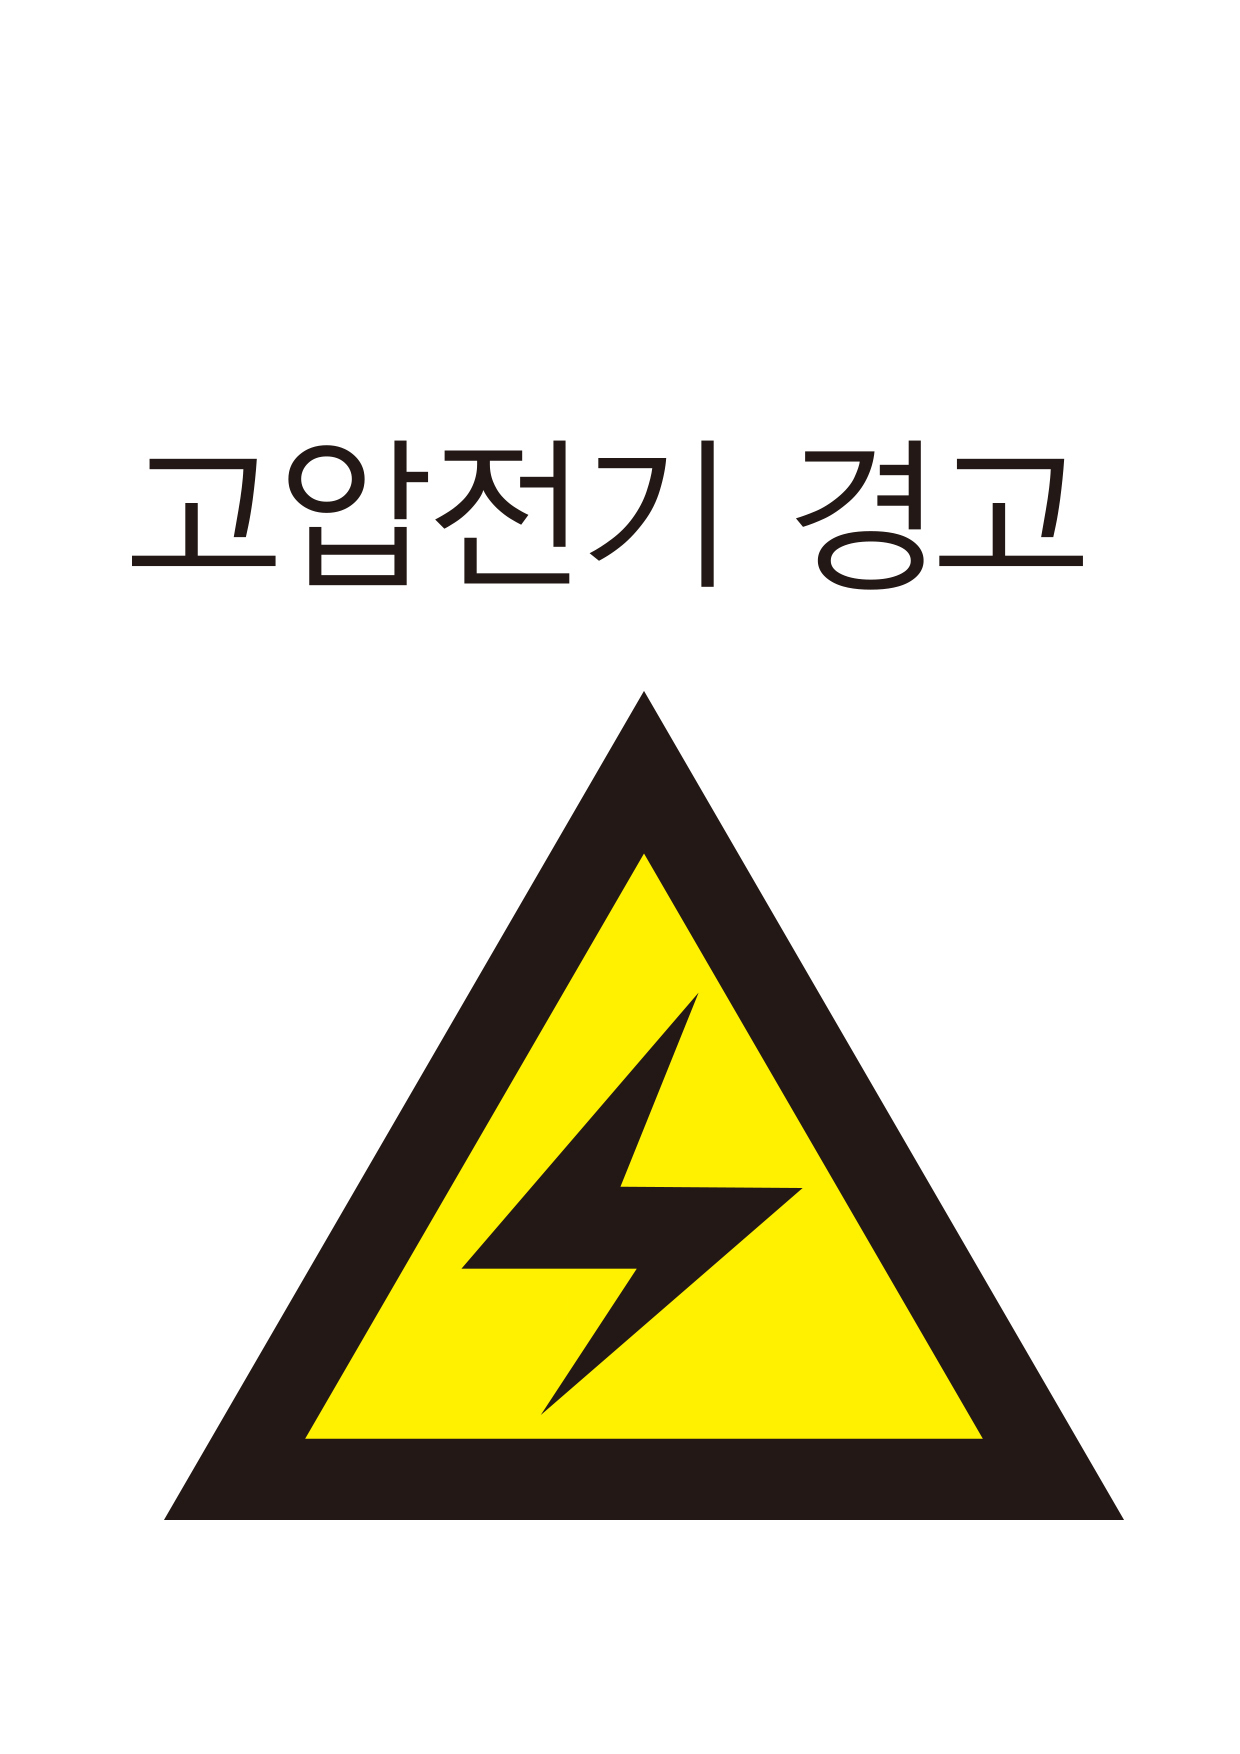 고압전기 경고(207)